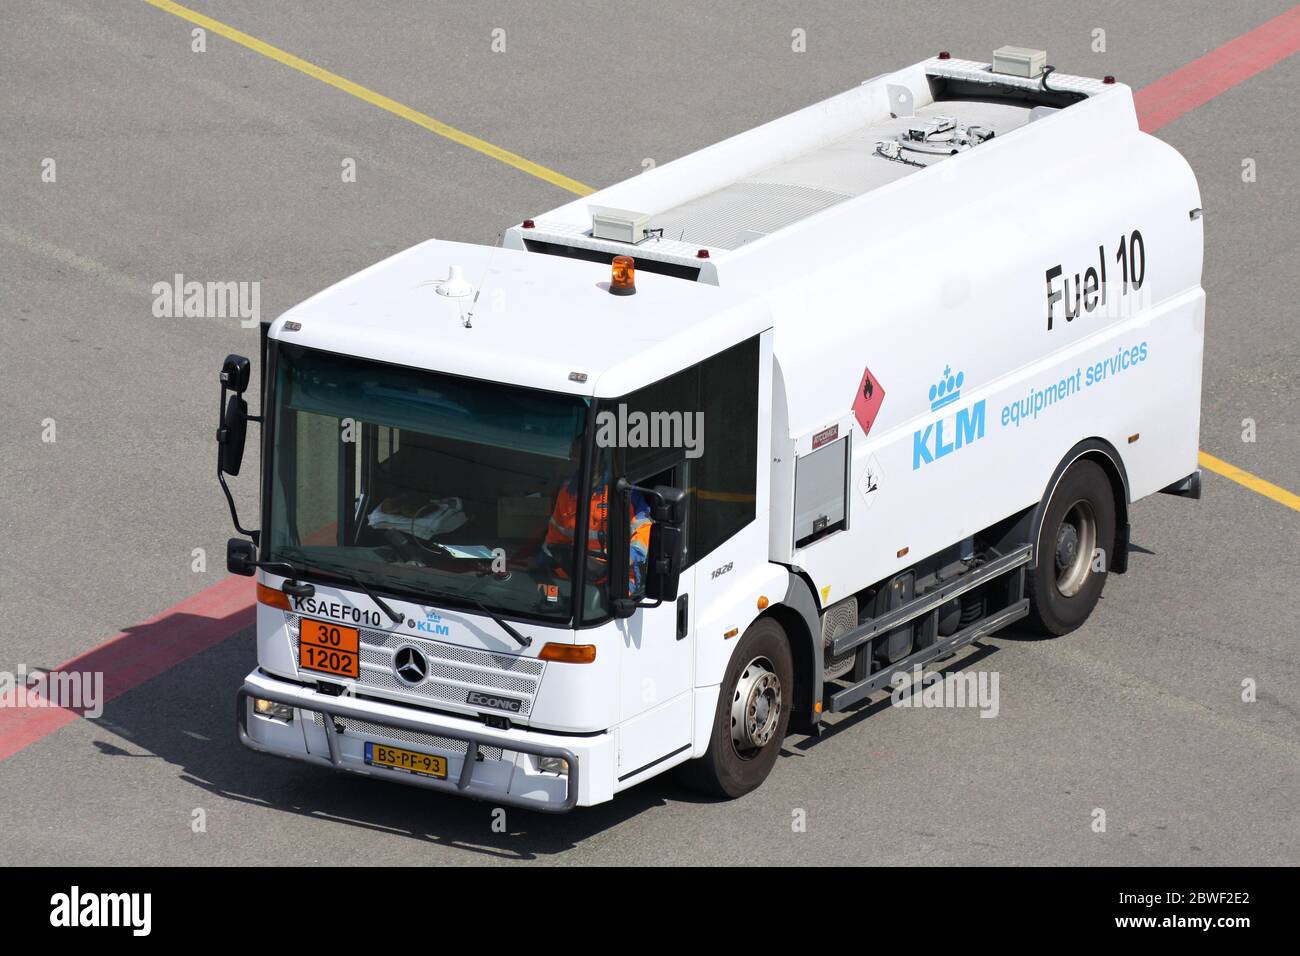 KLM Equipment Services Mercedes-Benz Econic Tank Truck presso l'aeroporto di Amsterdam Schiphol. Foto Stock